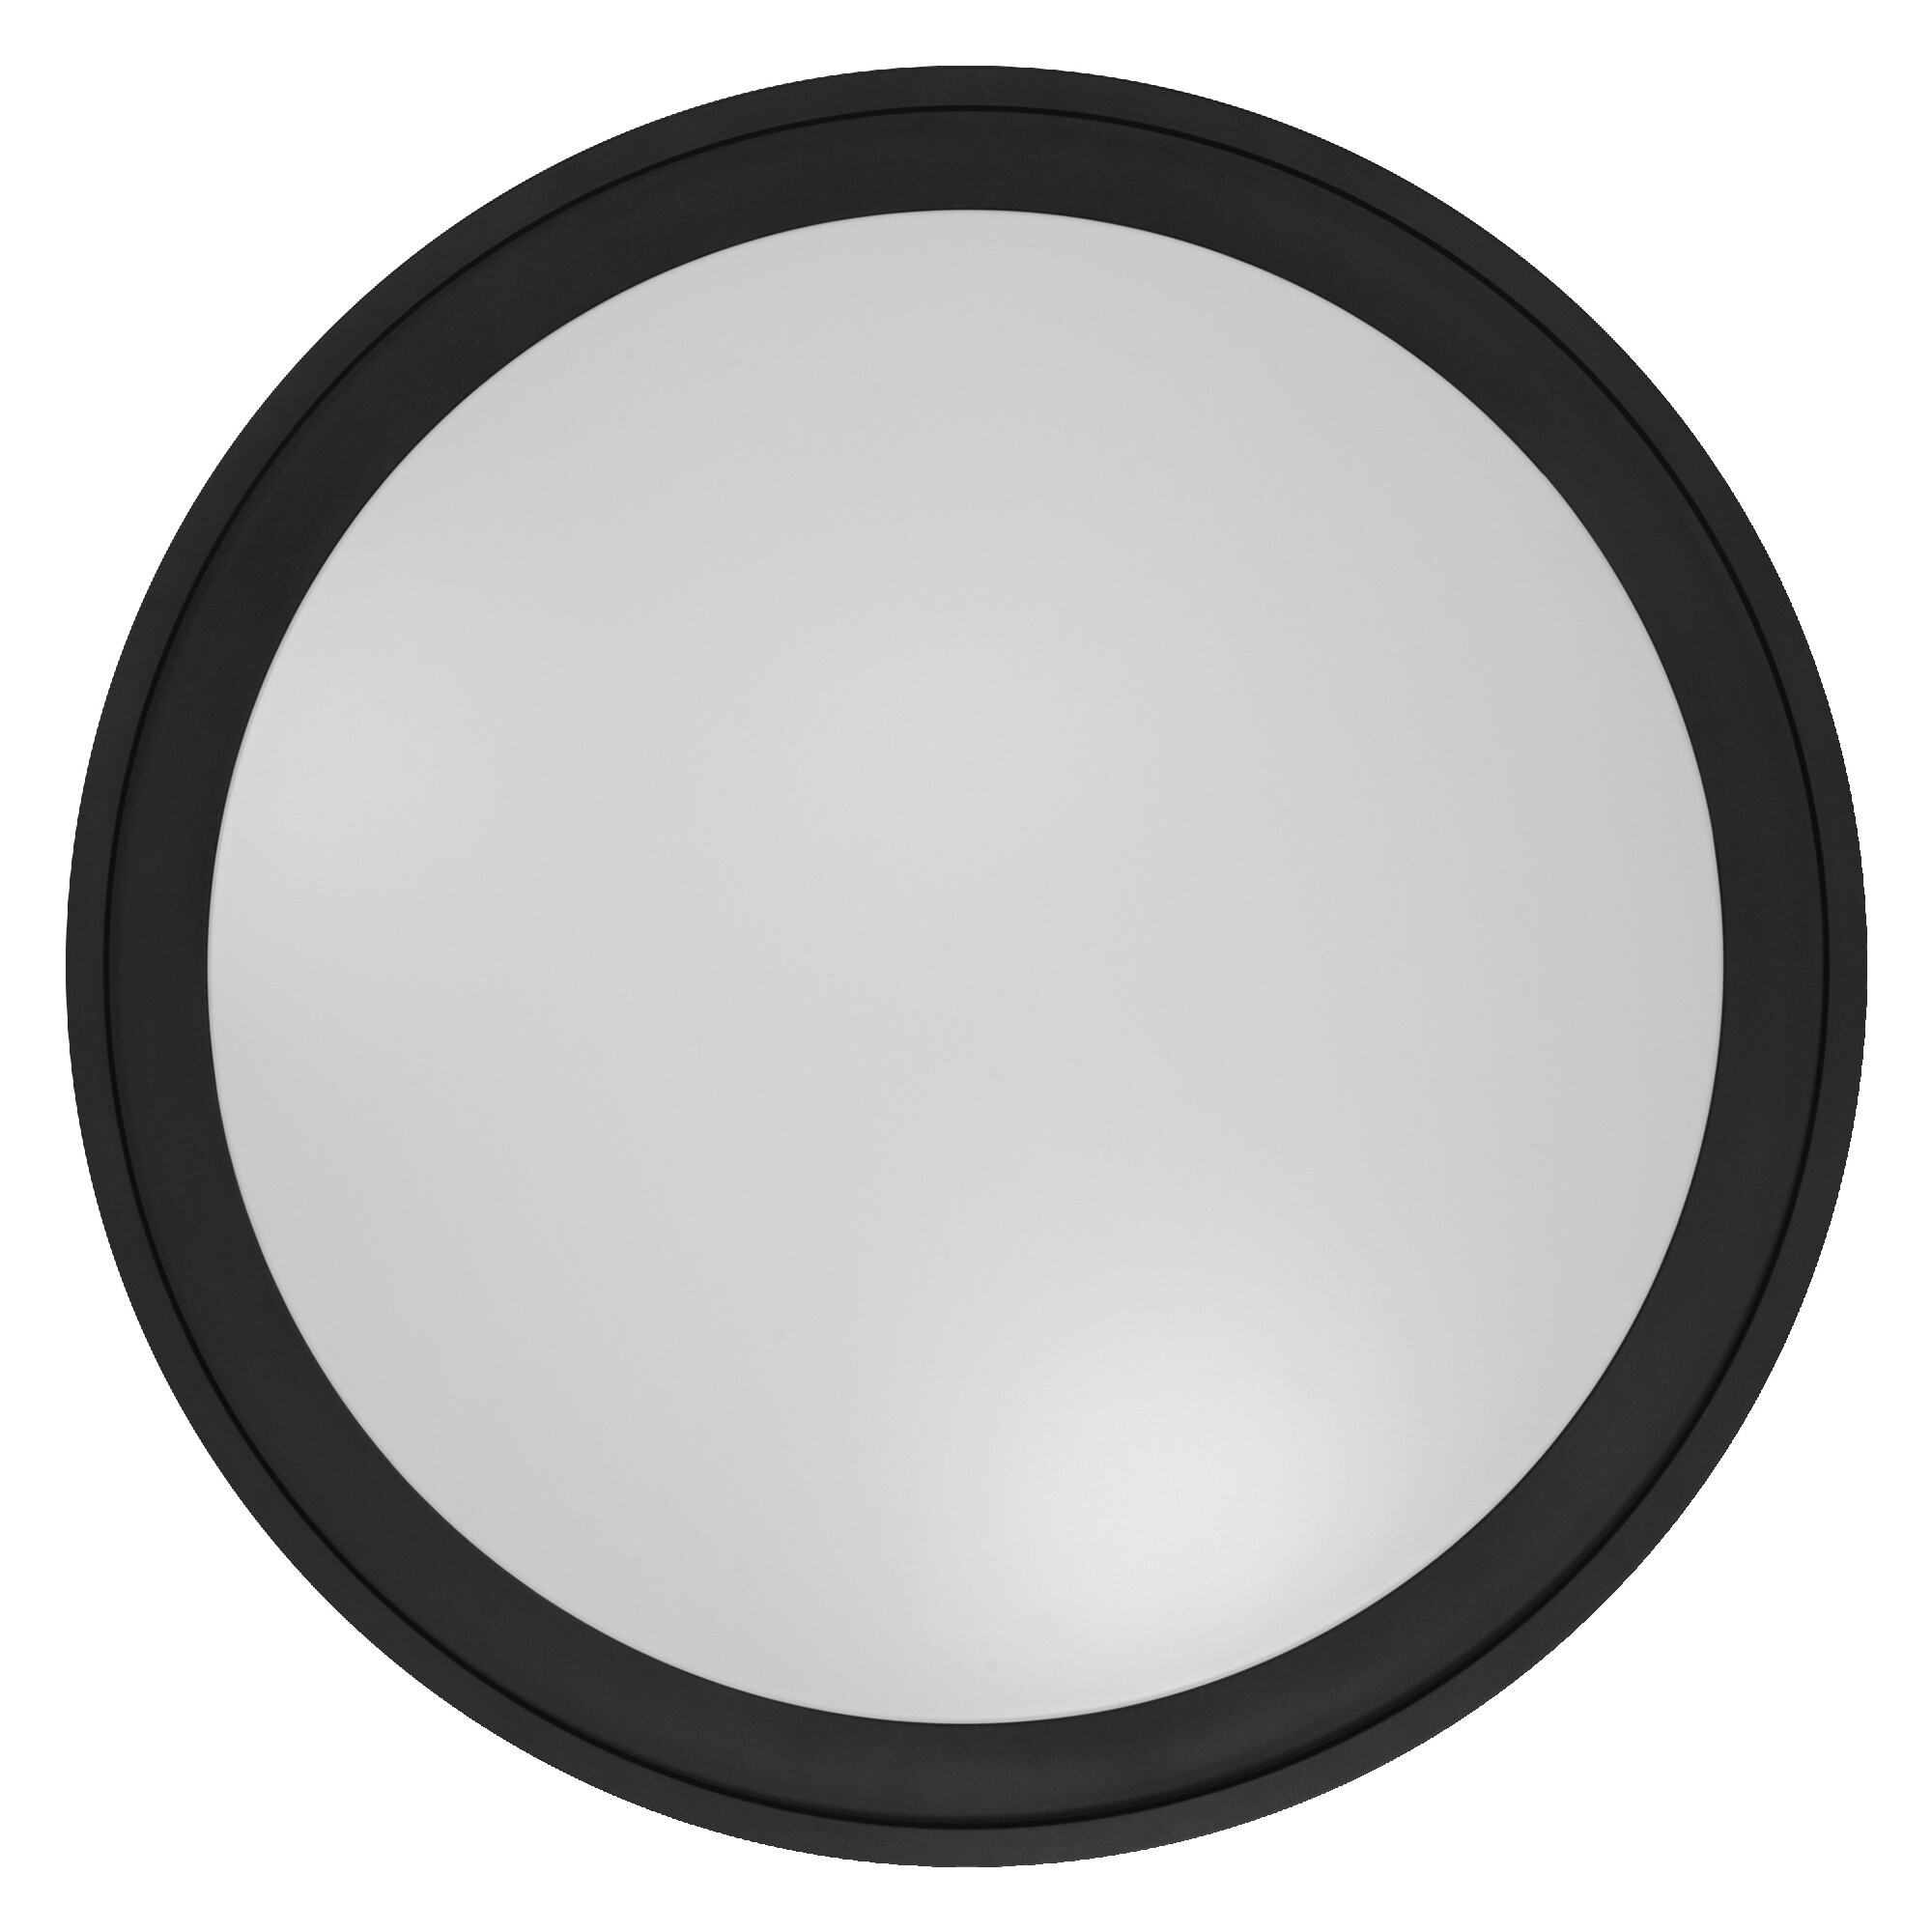 LED-Deckenleuchte 'Smart Circle' schwarz Ø 46 cm 2400 lm + product picture